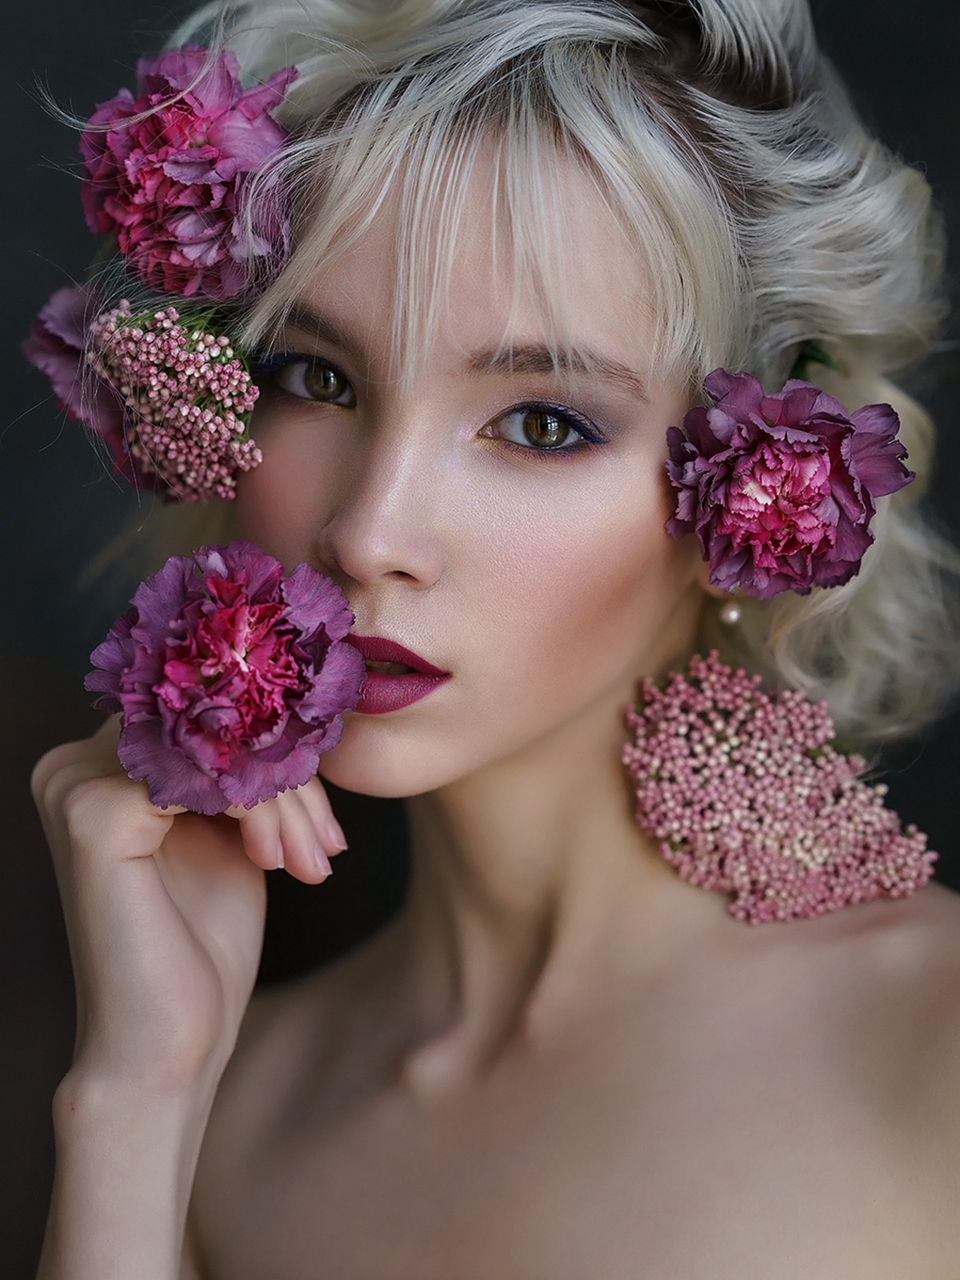 People 960x1280 Alexey Kazantsev women blonde flower in hair makeup eyeliner eyeshadow lipstick portrait looking at viewer blushing flowers